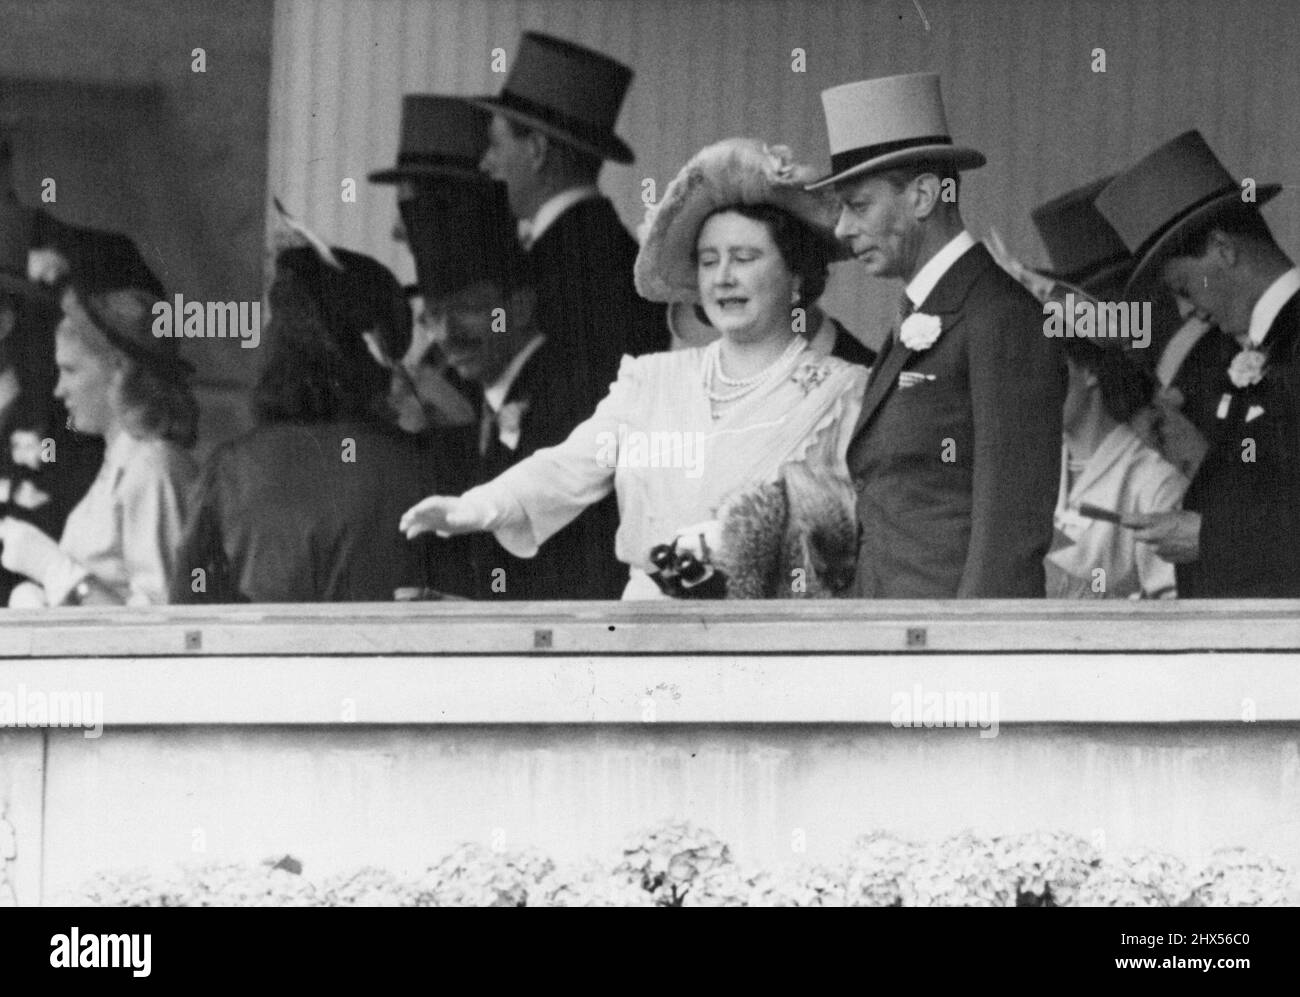 Famille royale aux courses d'Ascot -- leurs Majestés le Roi et la Reine au centre d'un groupe dans la boîte Royale d'Ascot aujourd'hui. Leurs Majestés le Roi et la Reine, accompagnés des princesses royales, ont assisté à l'ouverture de la rencontre de la course d'Ascot au jour le jour. 15 juin 1948. (Photo de Fox photos) Banque D'Images